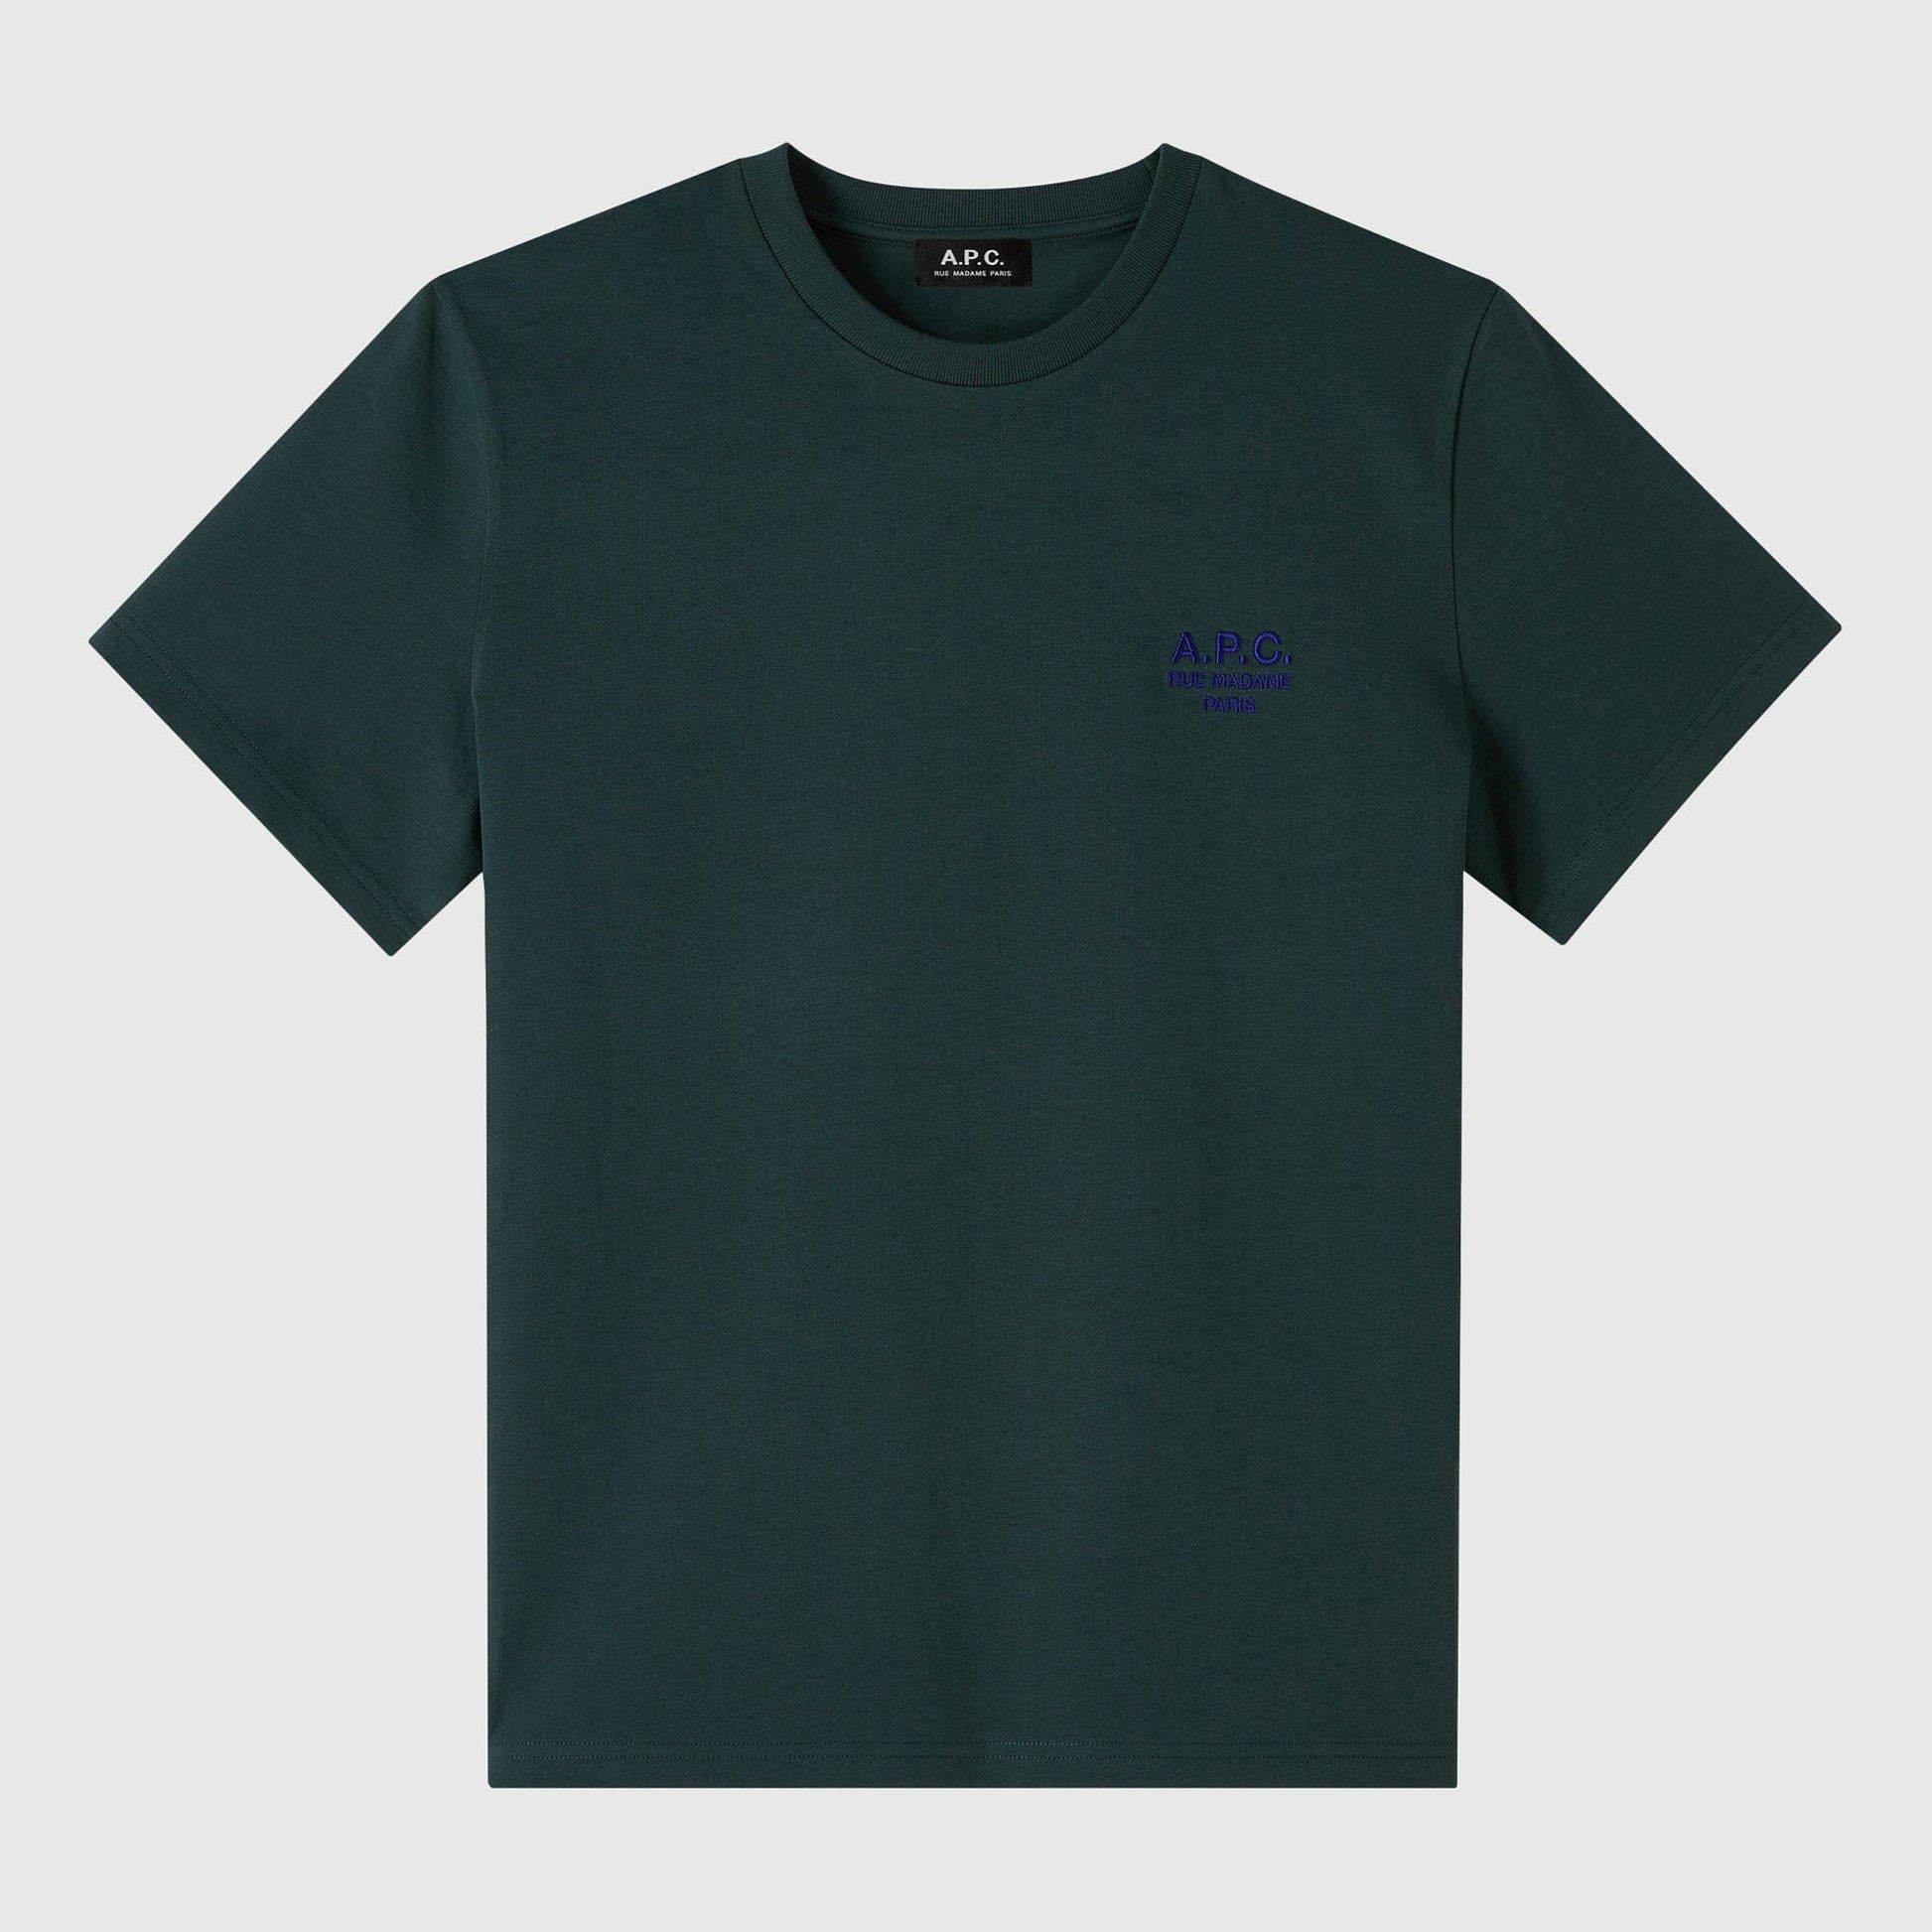 A.P.C Raymond New T-Shirt - Pine Green T-Shirt A.P.C. 